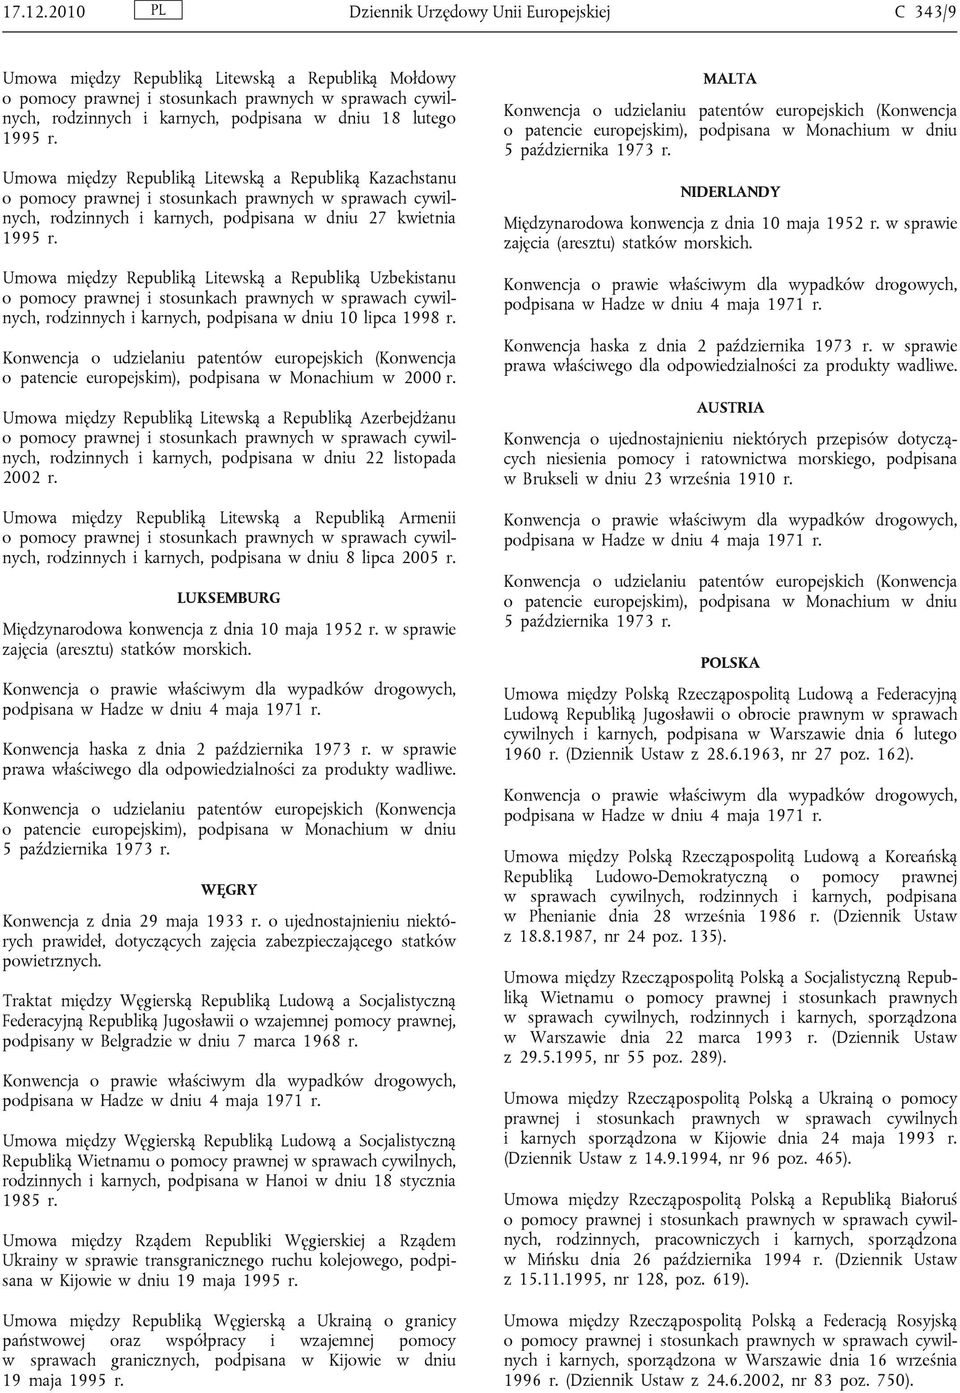 Kazachstanu rodzinnych i karnych, podpisana w dniu 27 kwietnia Umowa między Republiką Litewską a Republiką Uzbekistanu rodzinnych i karnych, podpisana w dniu 10 lipca 1998 r.